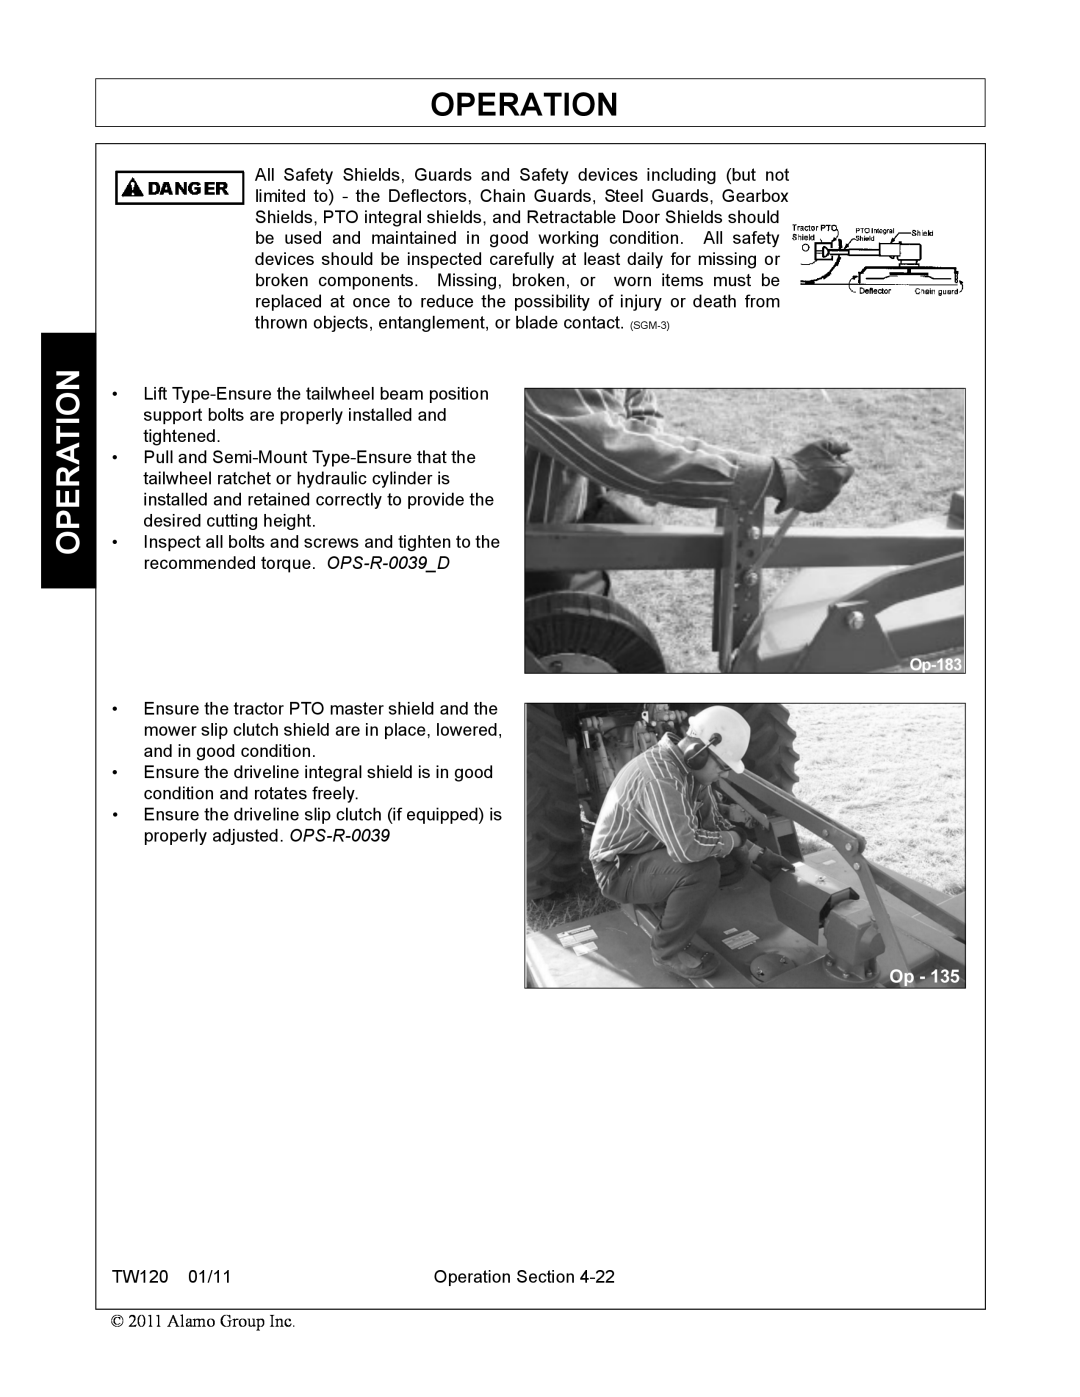 Blue Rhino FC-0024, FC-0025 manual Operation, TW120 01/11 